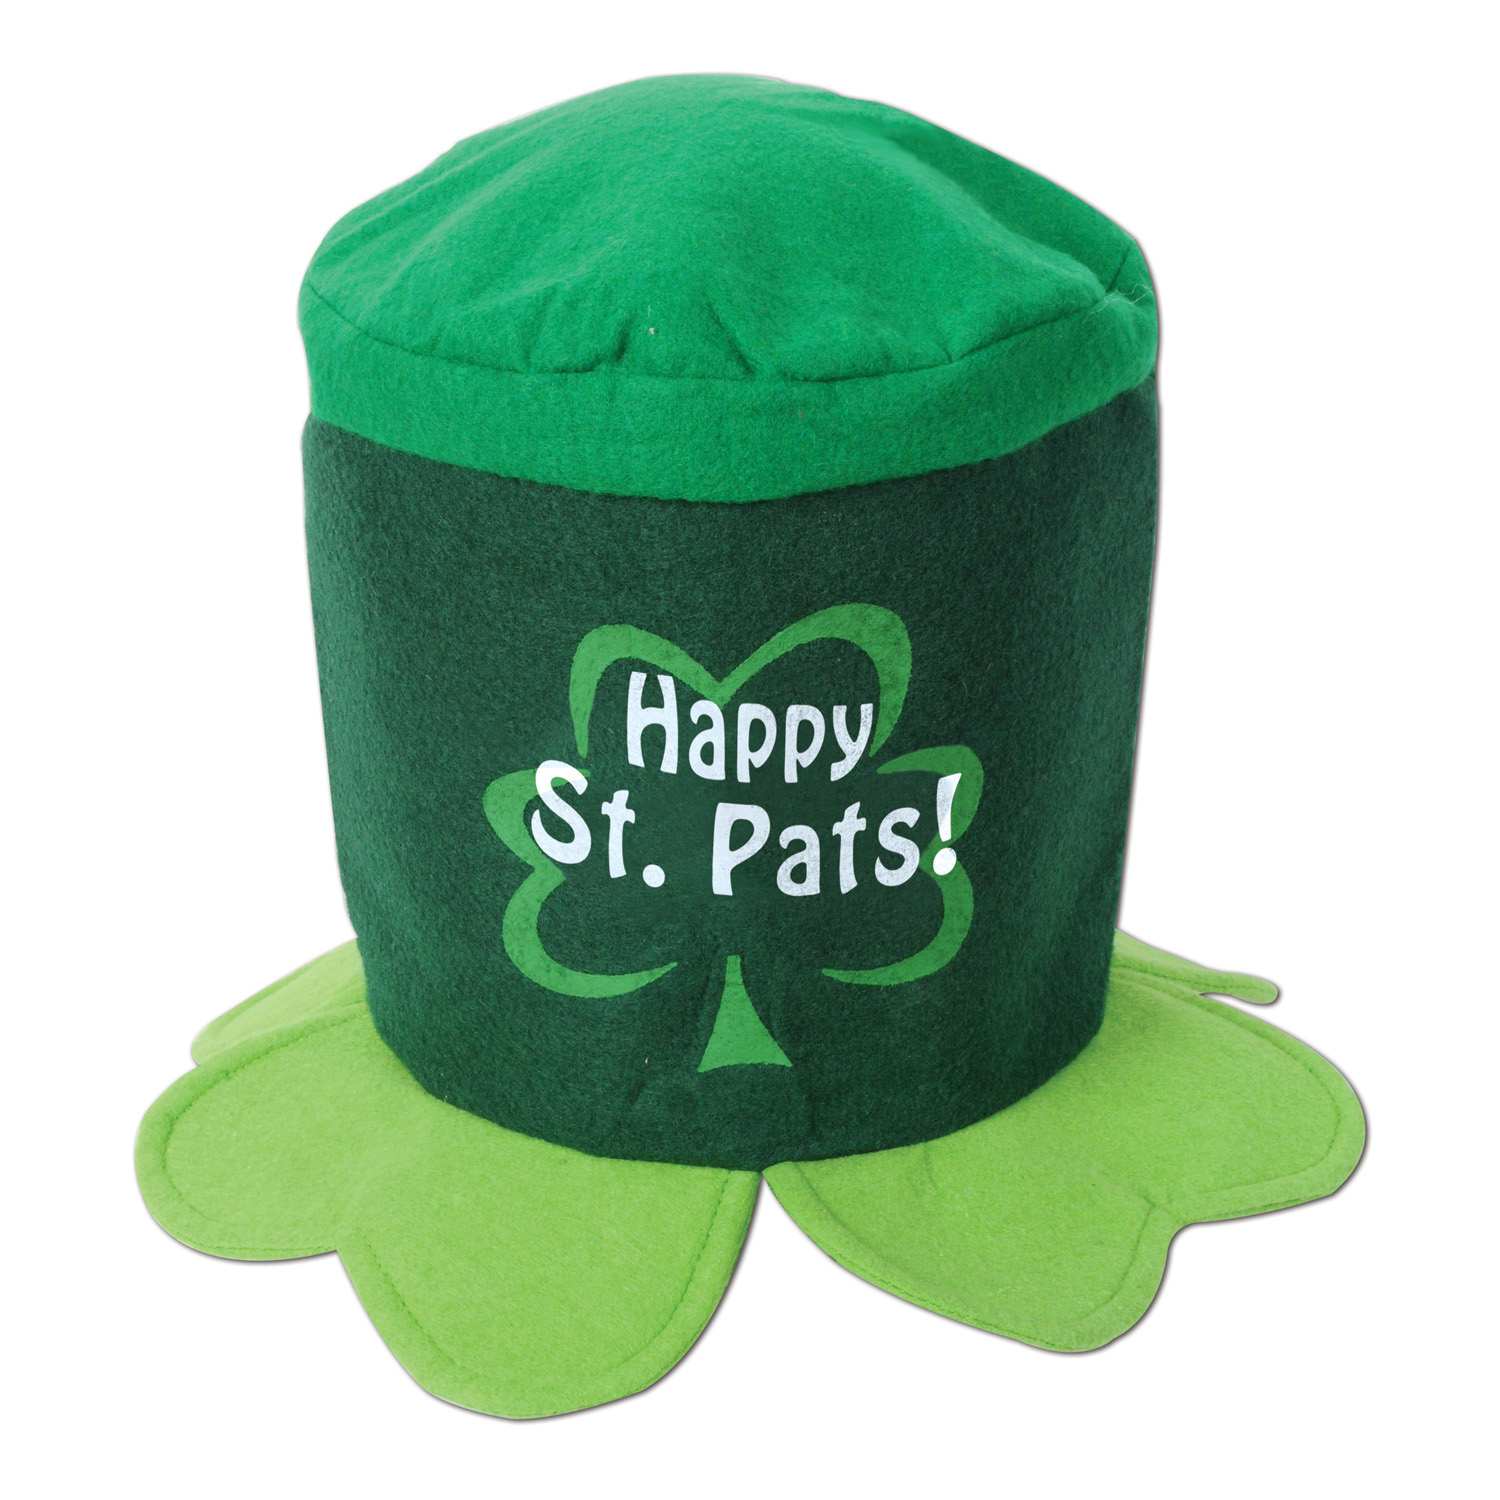 Happy St Pat's! HAT